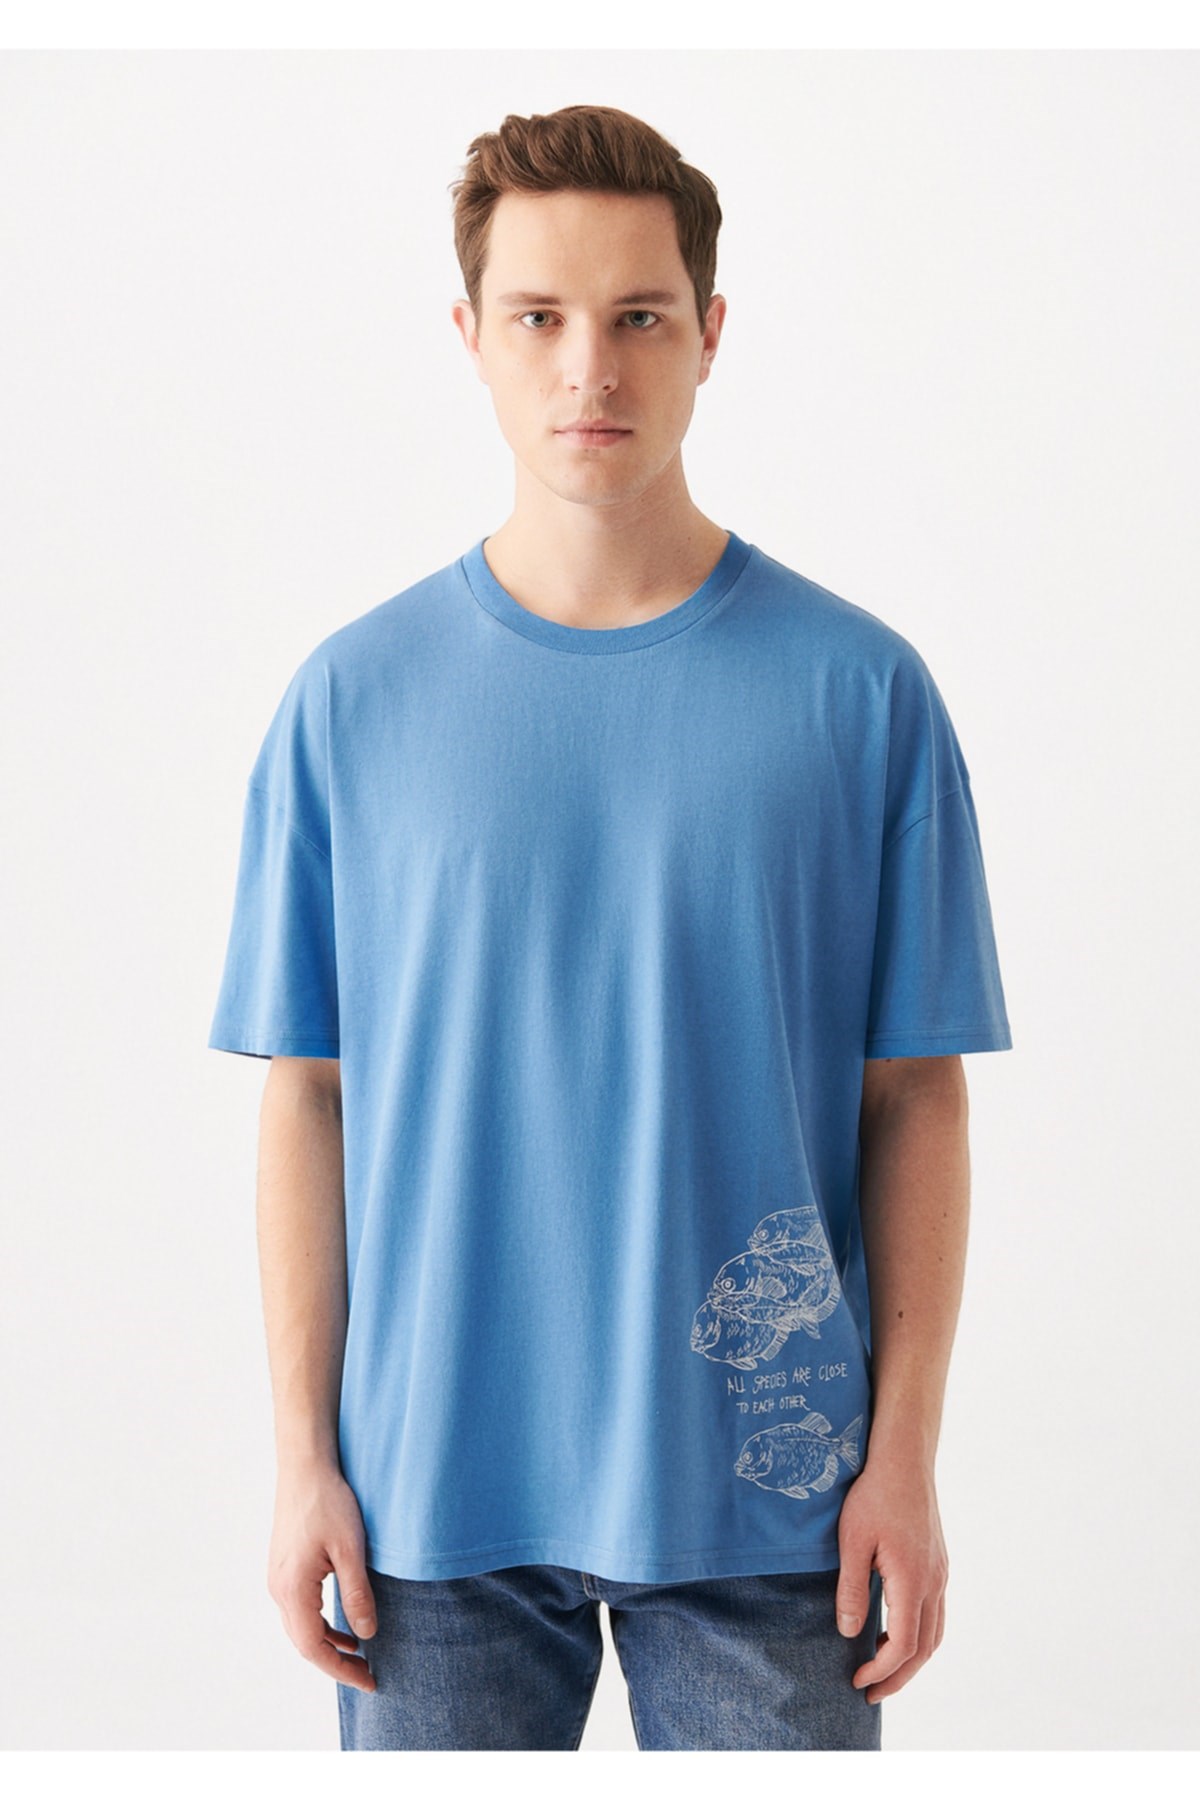 Mavi Jeans Erkek T-Shirt 0610158-80620 